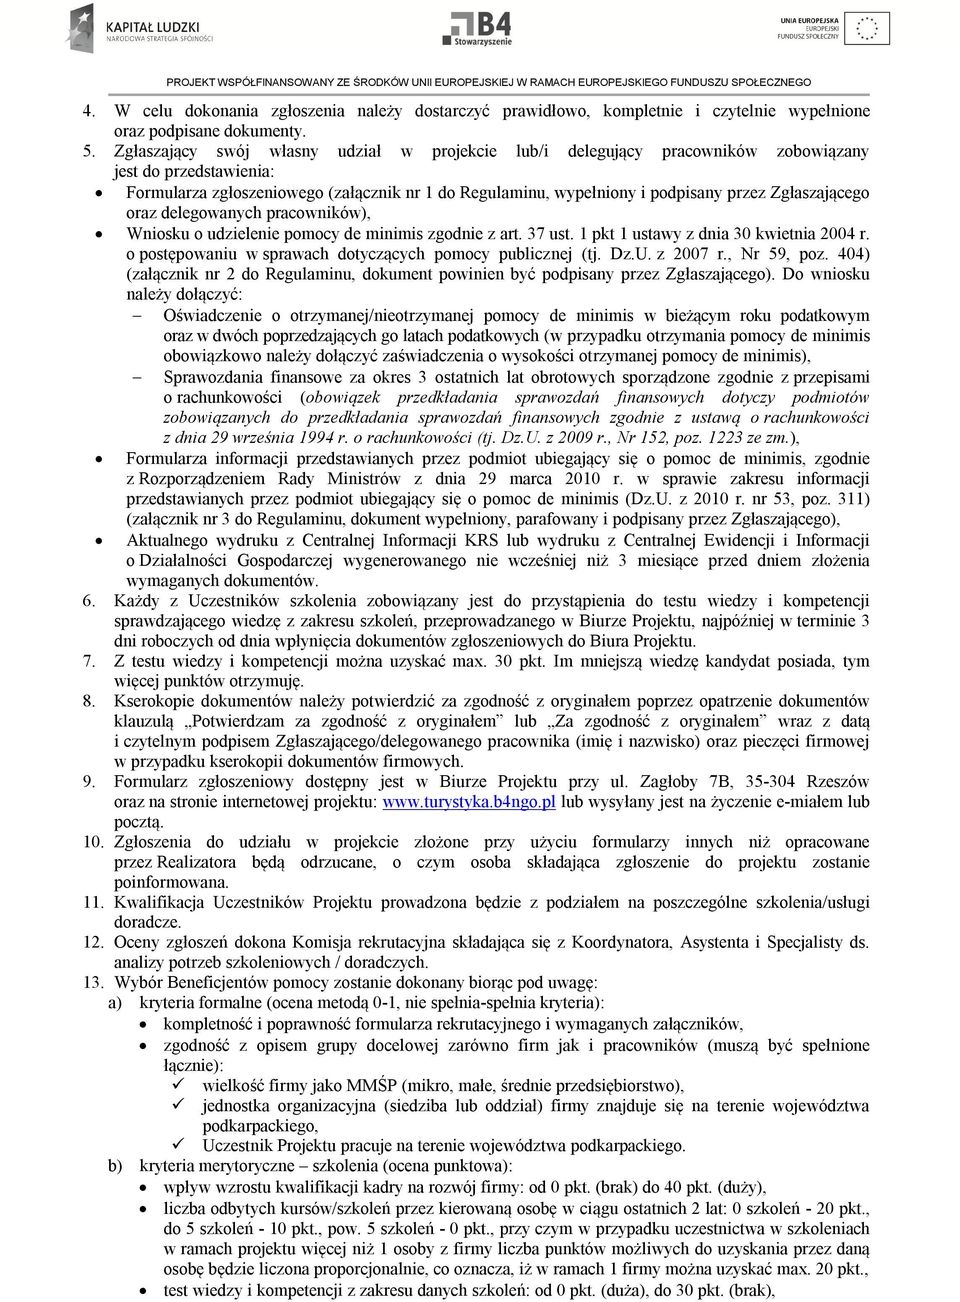 Zgłaszającego oraz delegowanych pracowników), Wniosku o udzielenie pomocy de minimis zgodnie z art. 37 ust. 1 pkt 1 ustawy z dnia 30 kwietnia 2004 r.